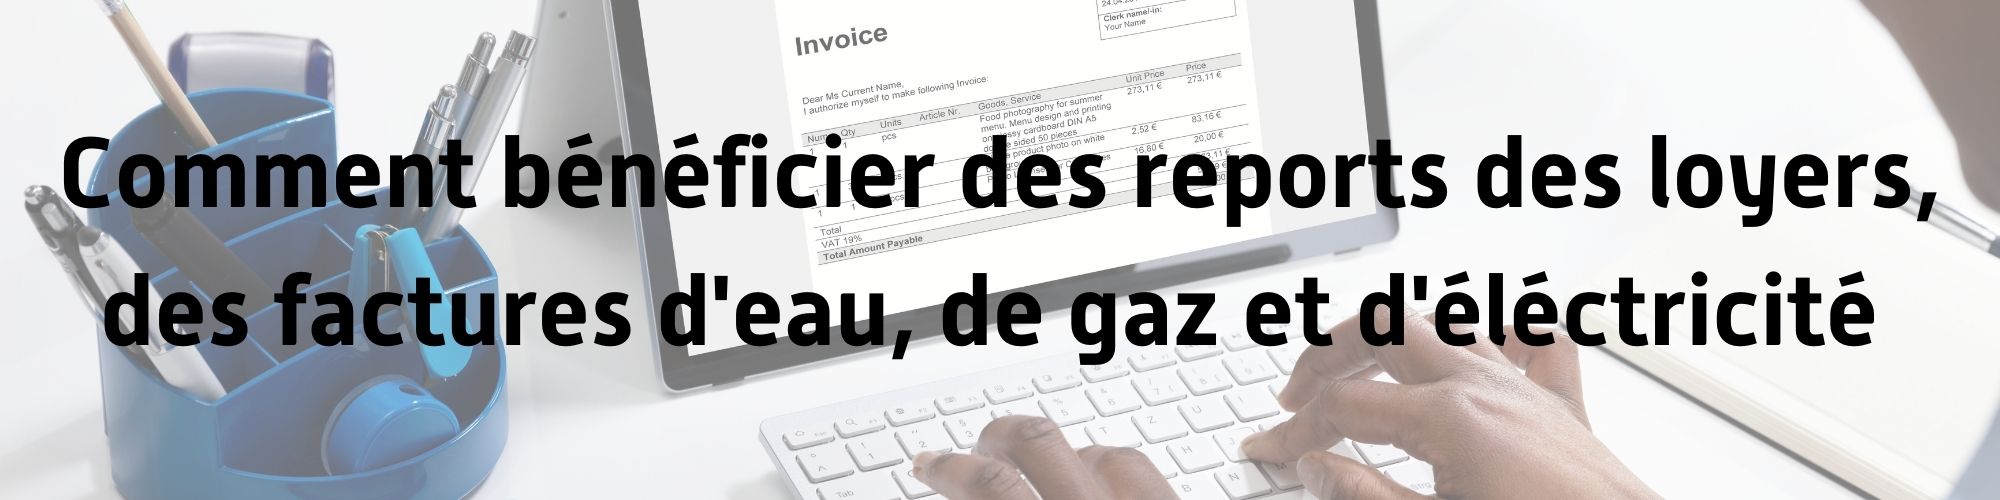 covid_report_facture_eau_electricité_gaz